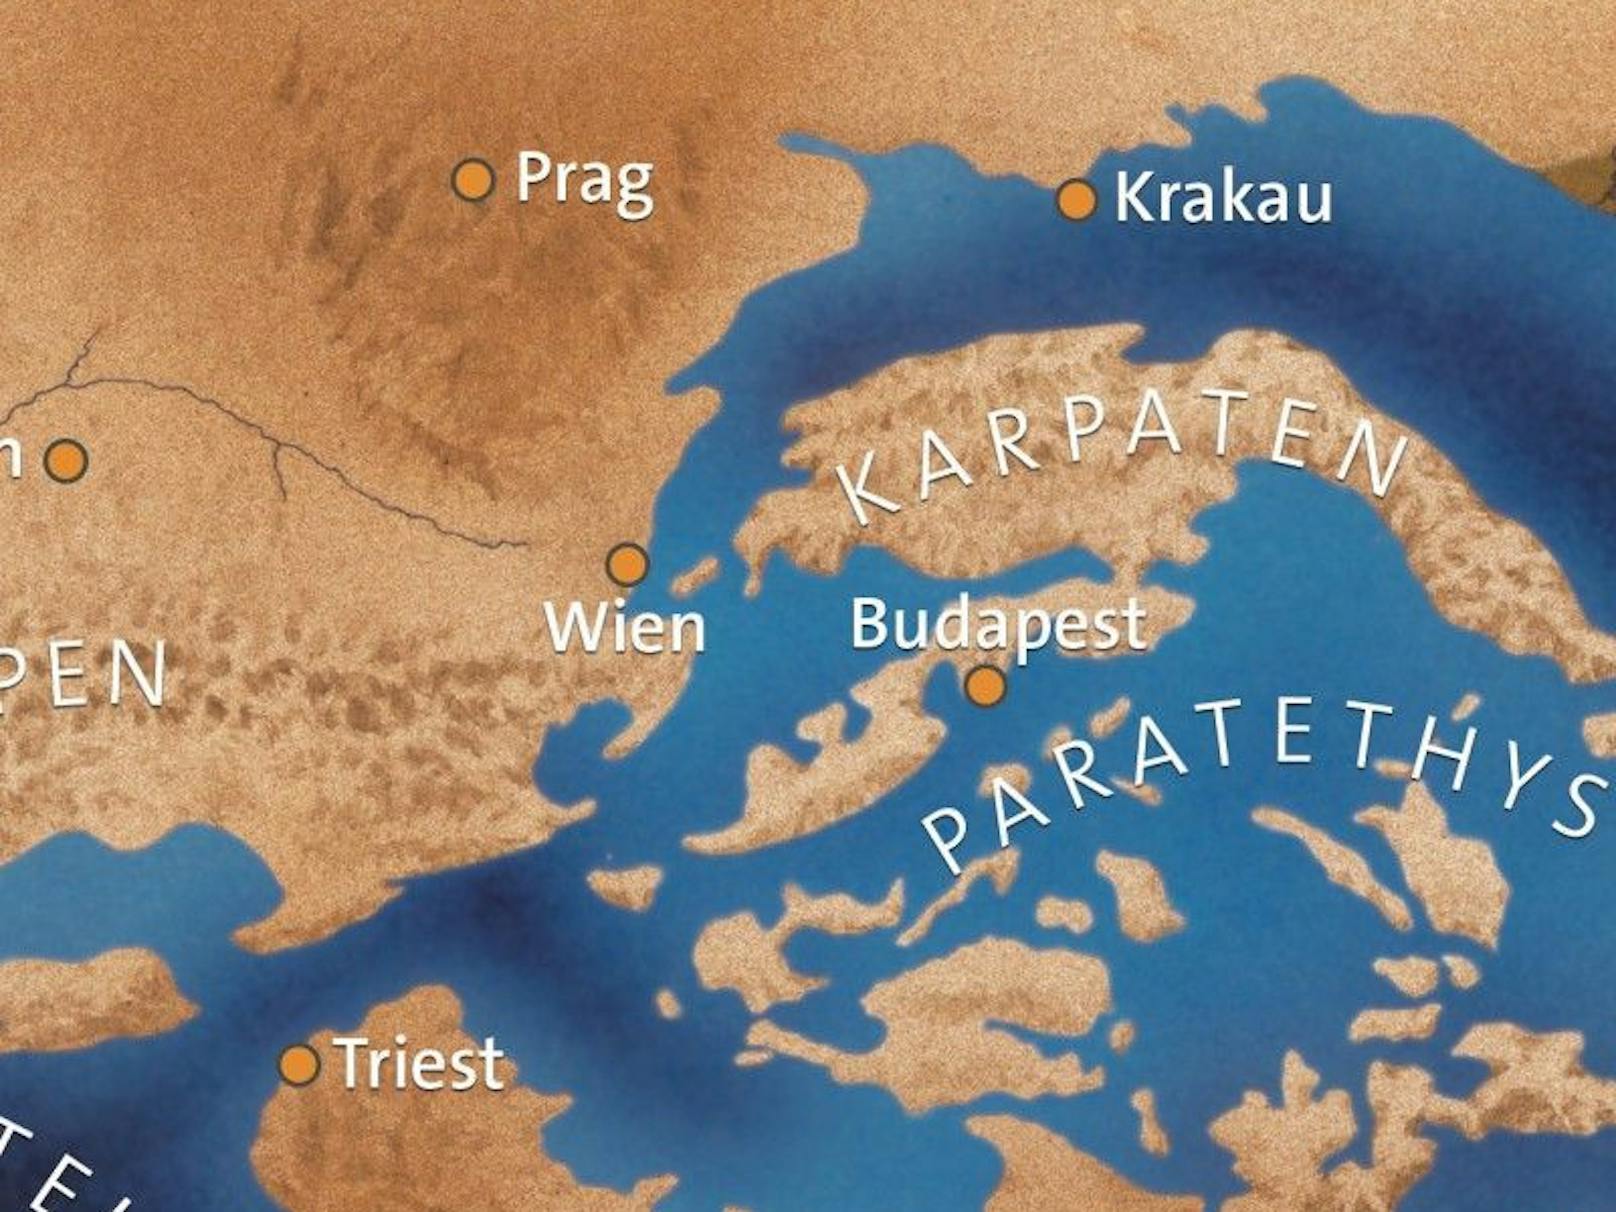 Rekonstruktion des Paratethys-Meeres vor 15 Millionen Jahren.